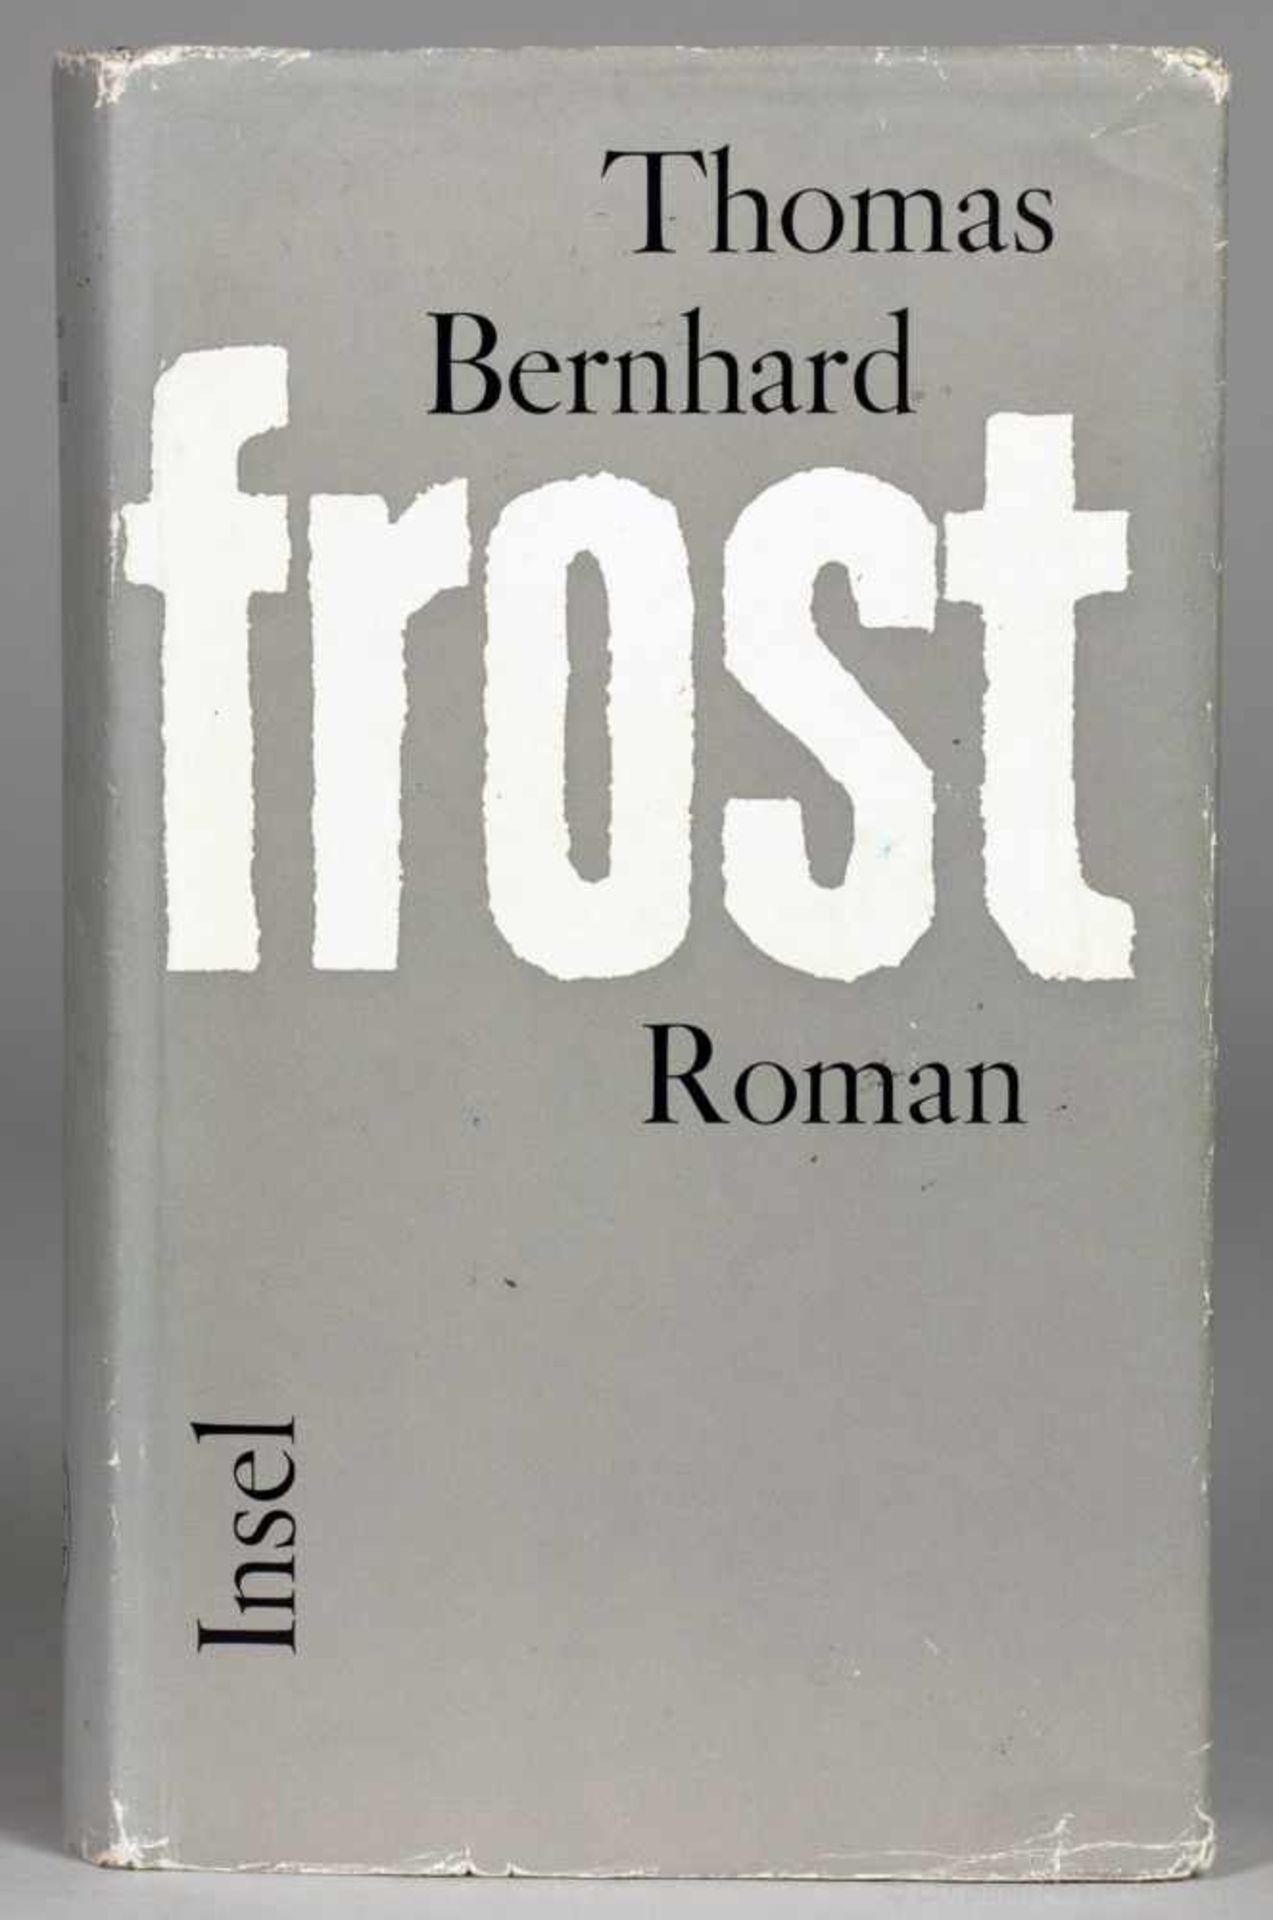 Thomas Bernhard. Frost. Frankfurt am Main, Insel 1963. Originalleinenband mit Rückenschild und